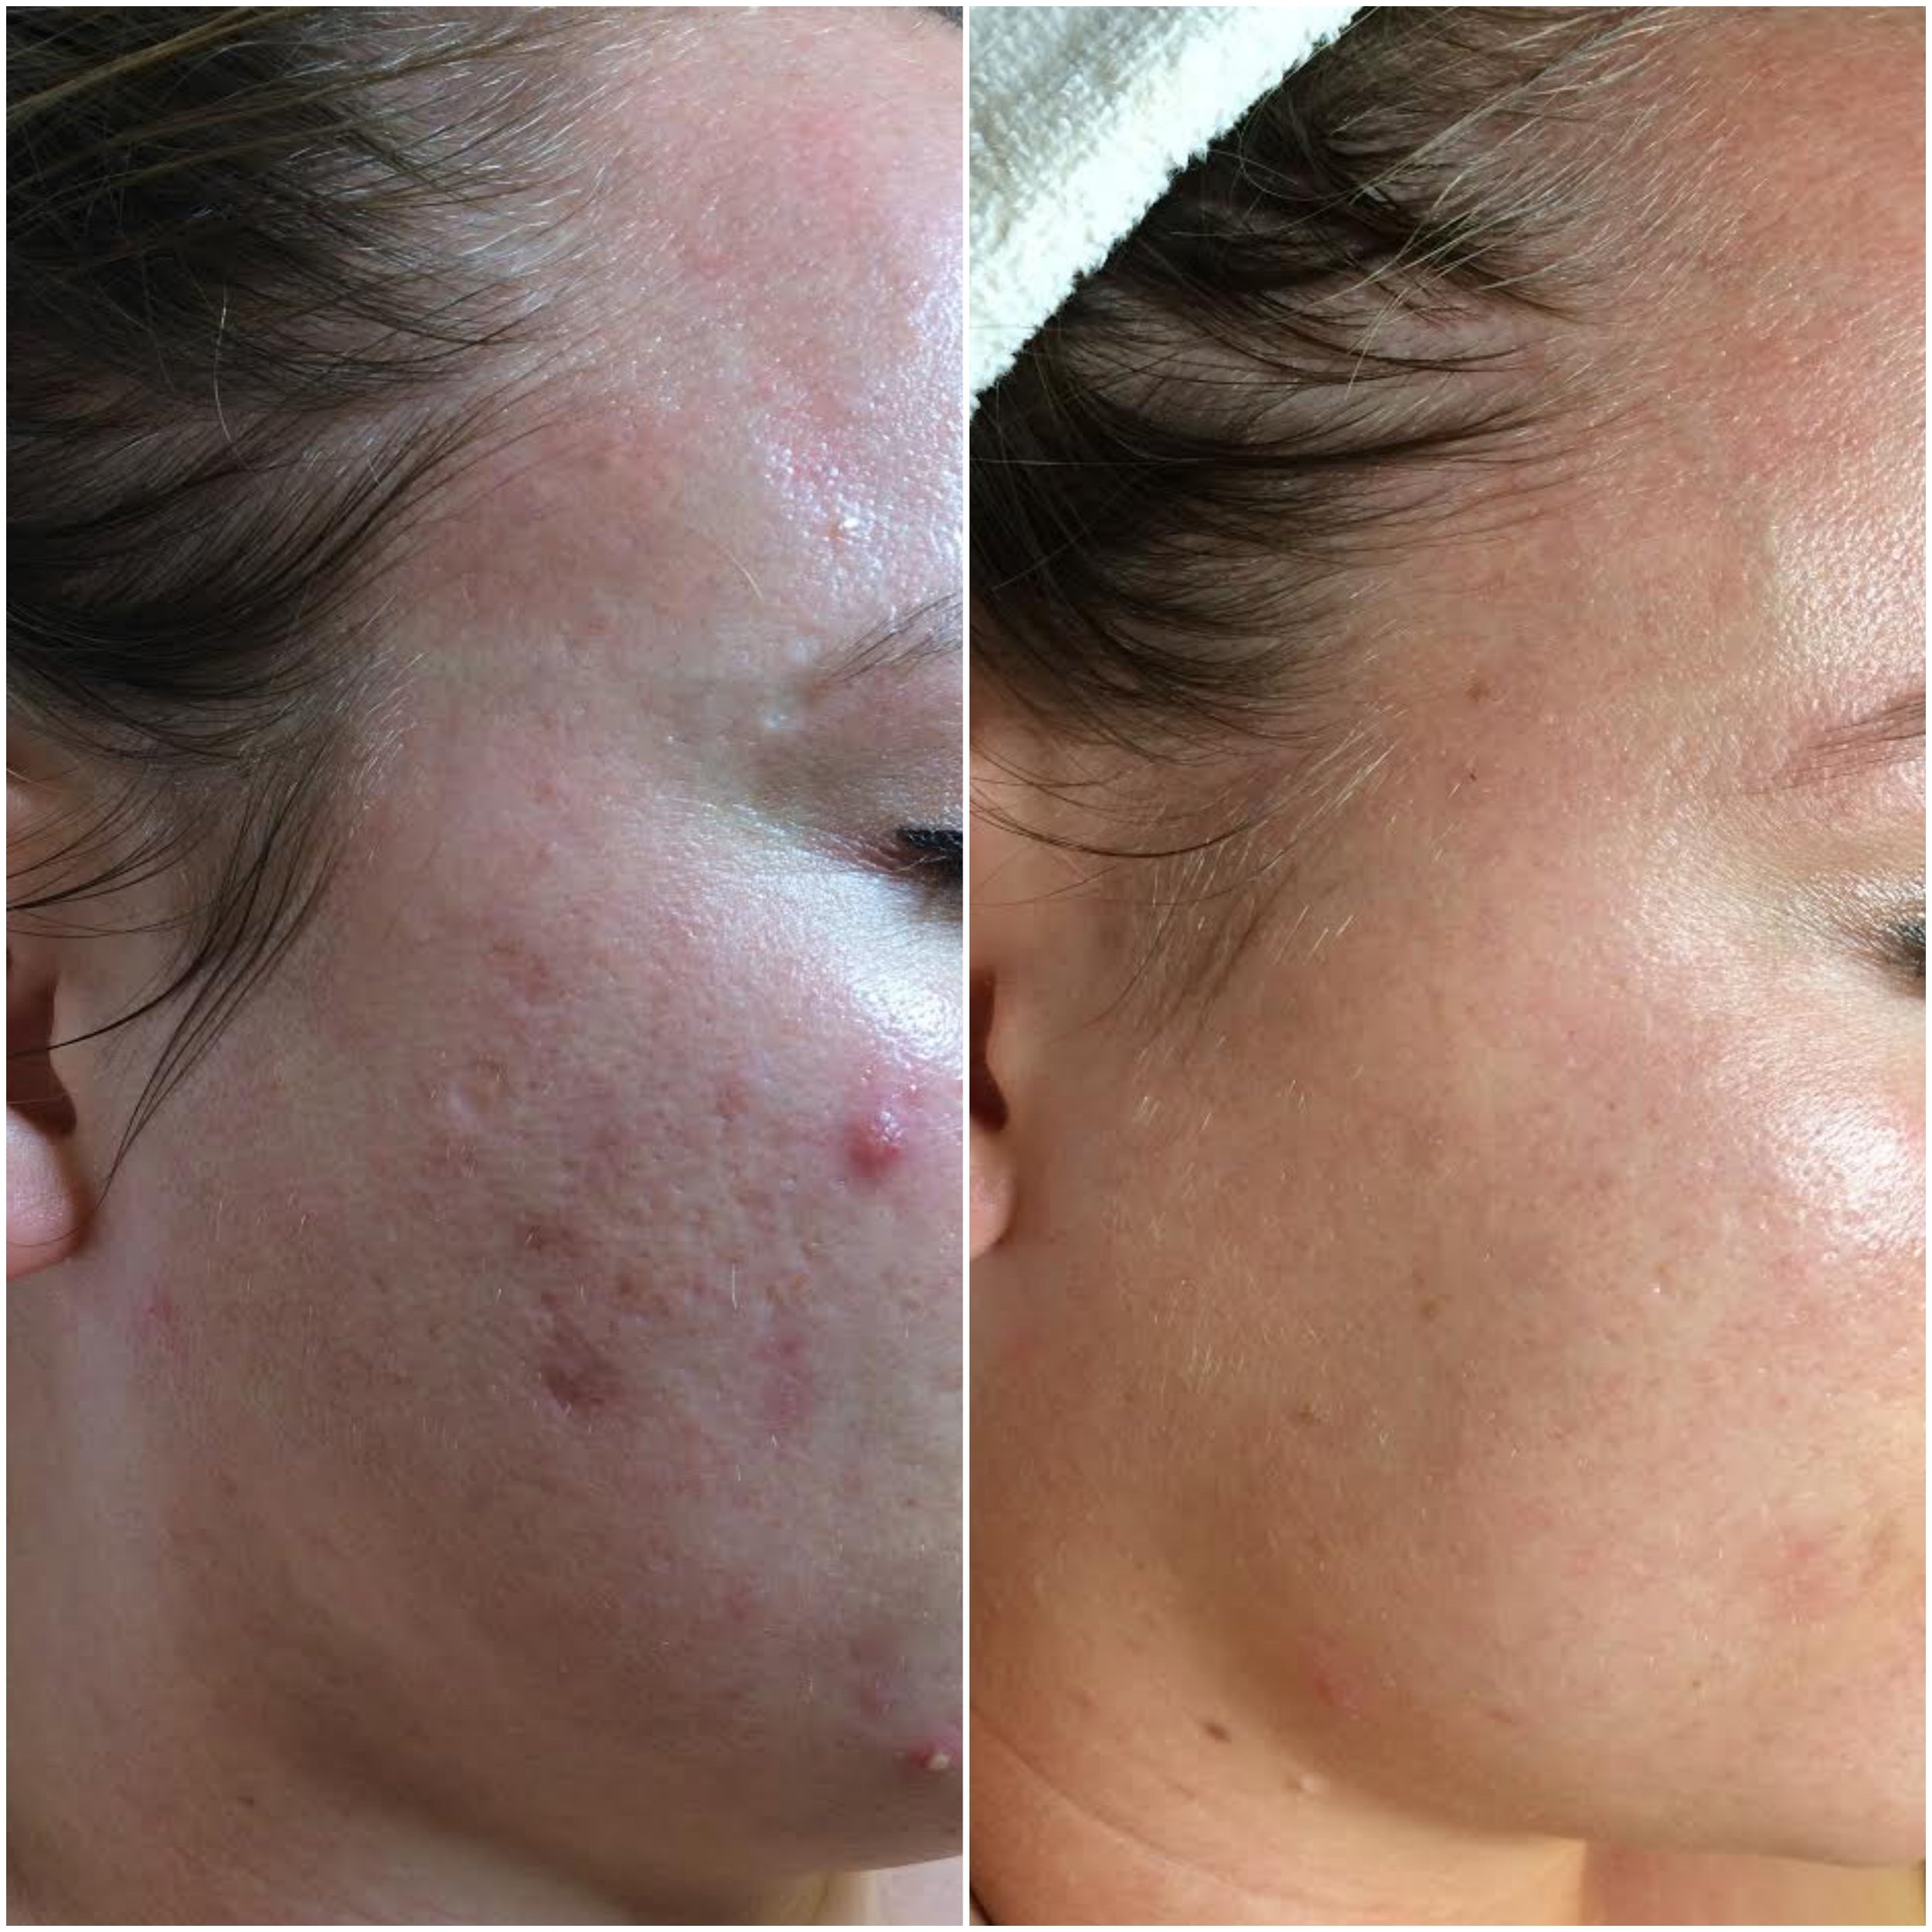   Cystic acne cleared, using NŪR hi-tech facial series  